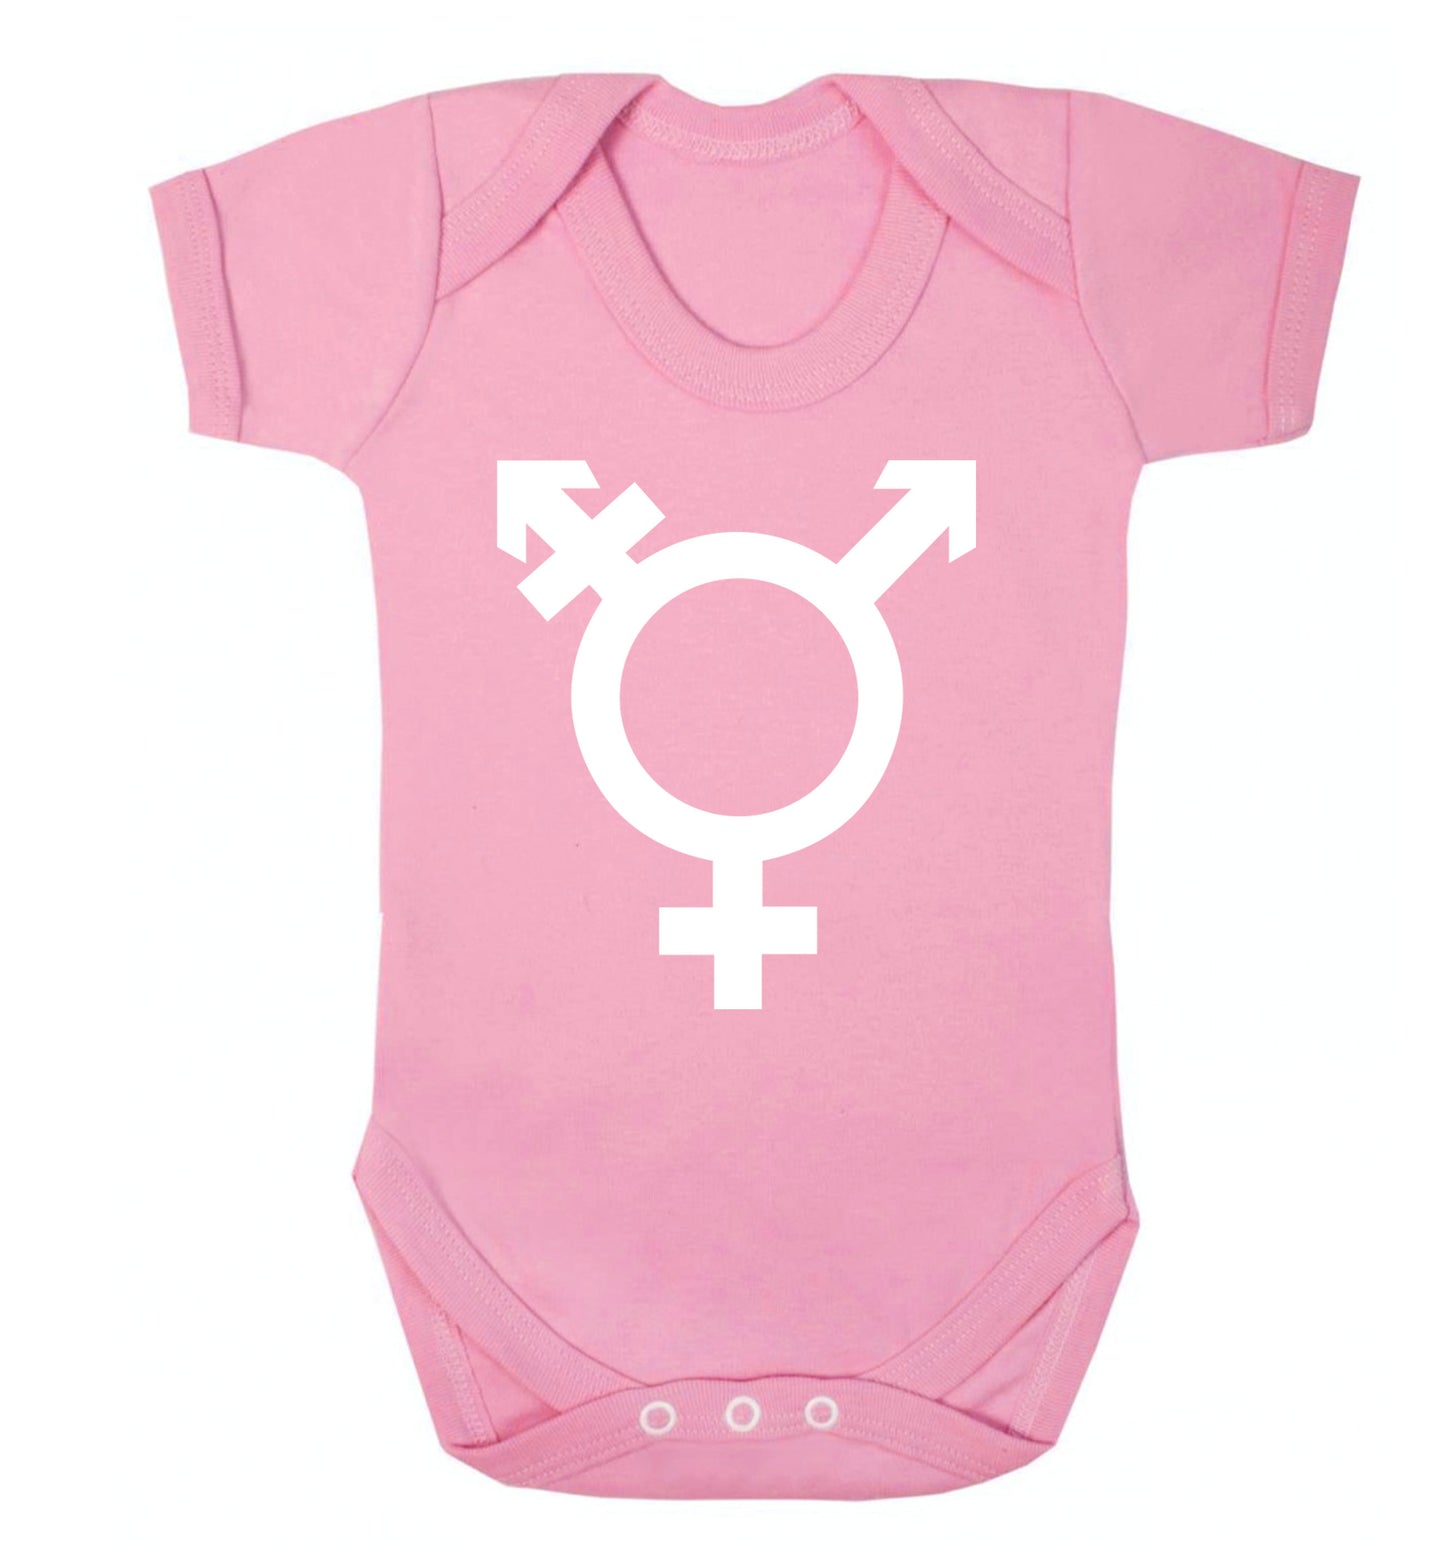 Gender neutral symbol large Baby Vest pale pink 18-24 months